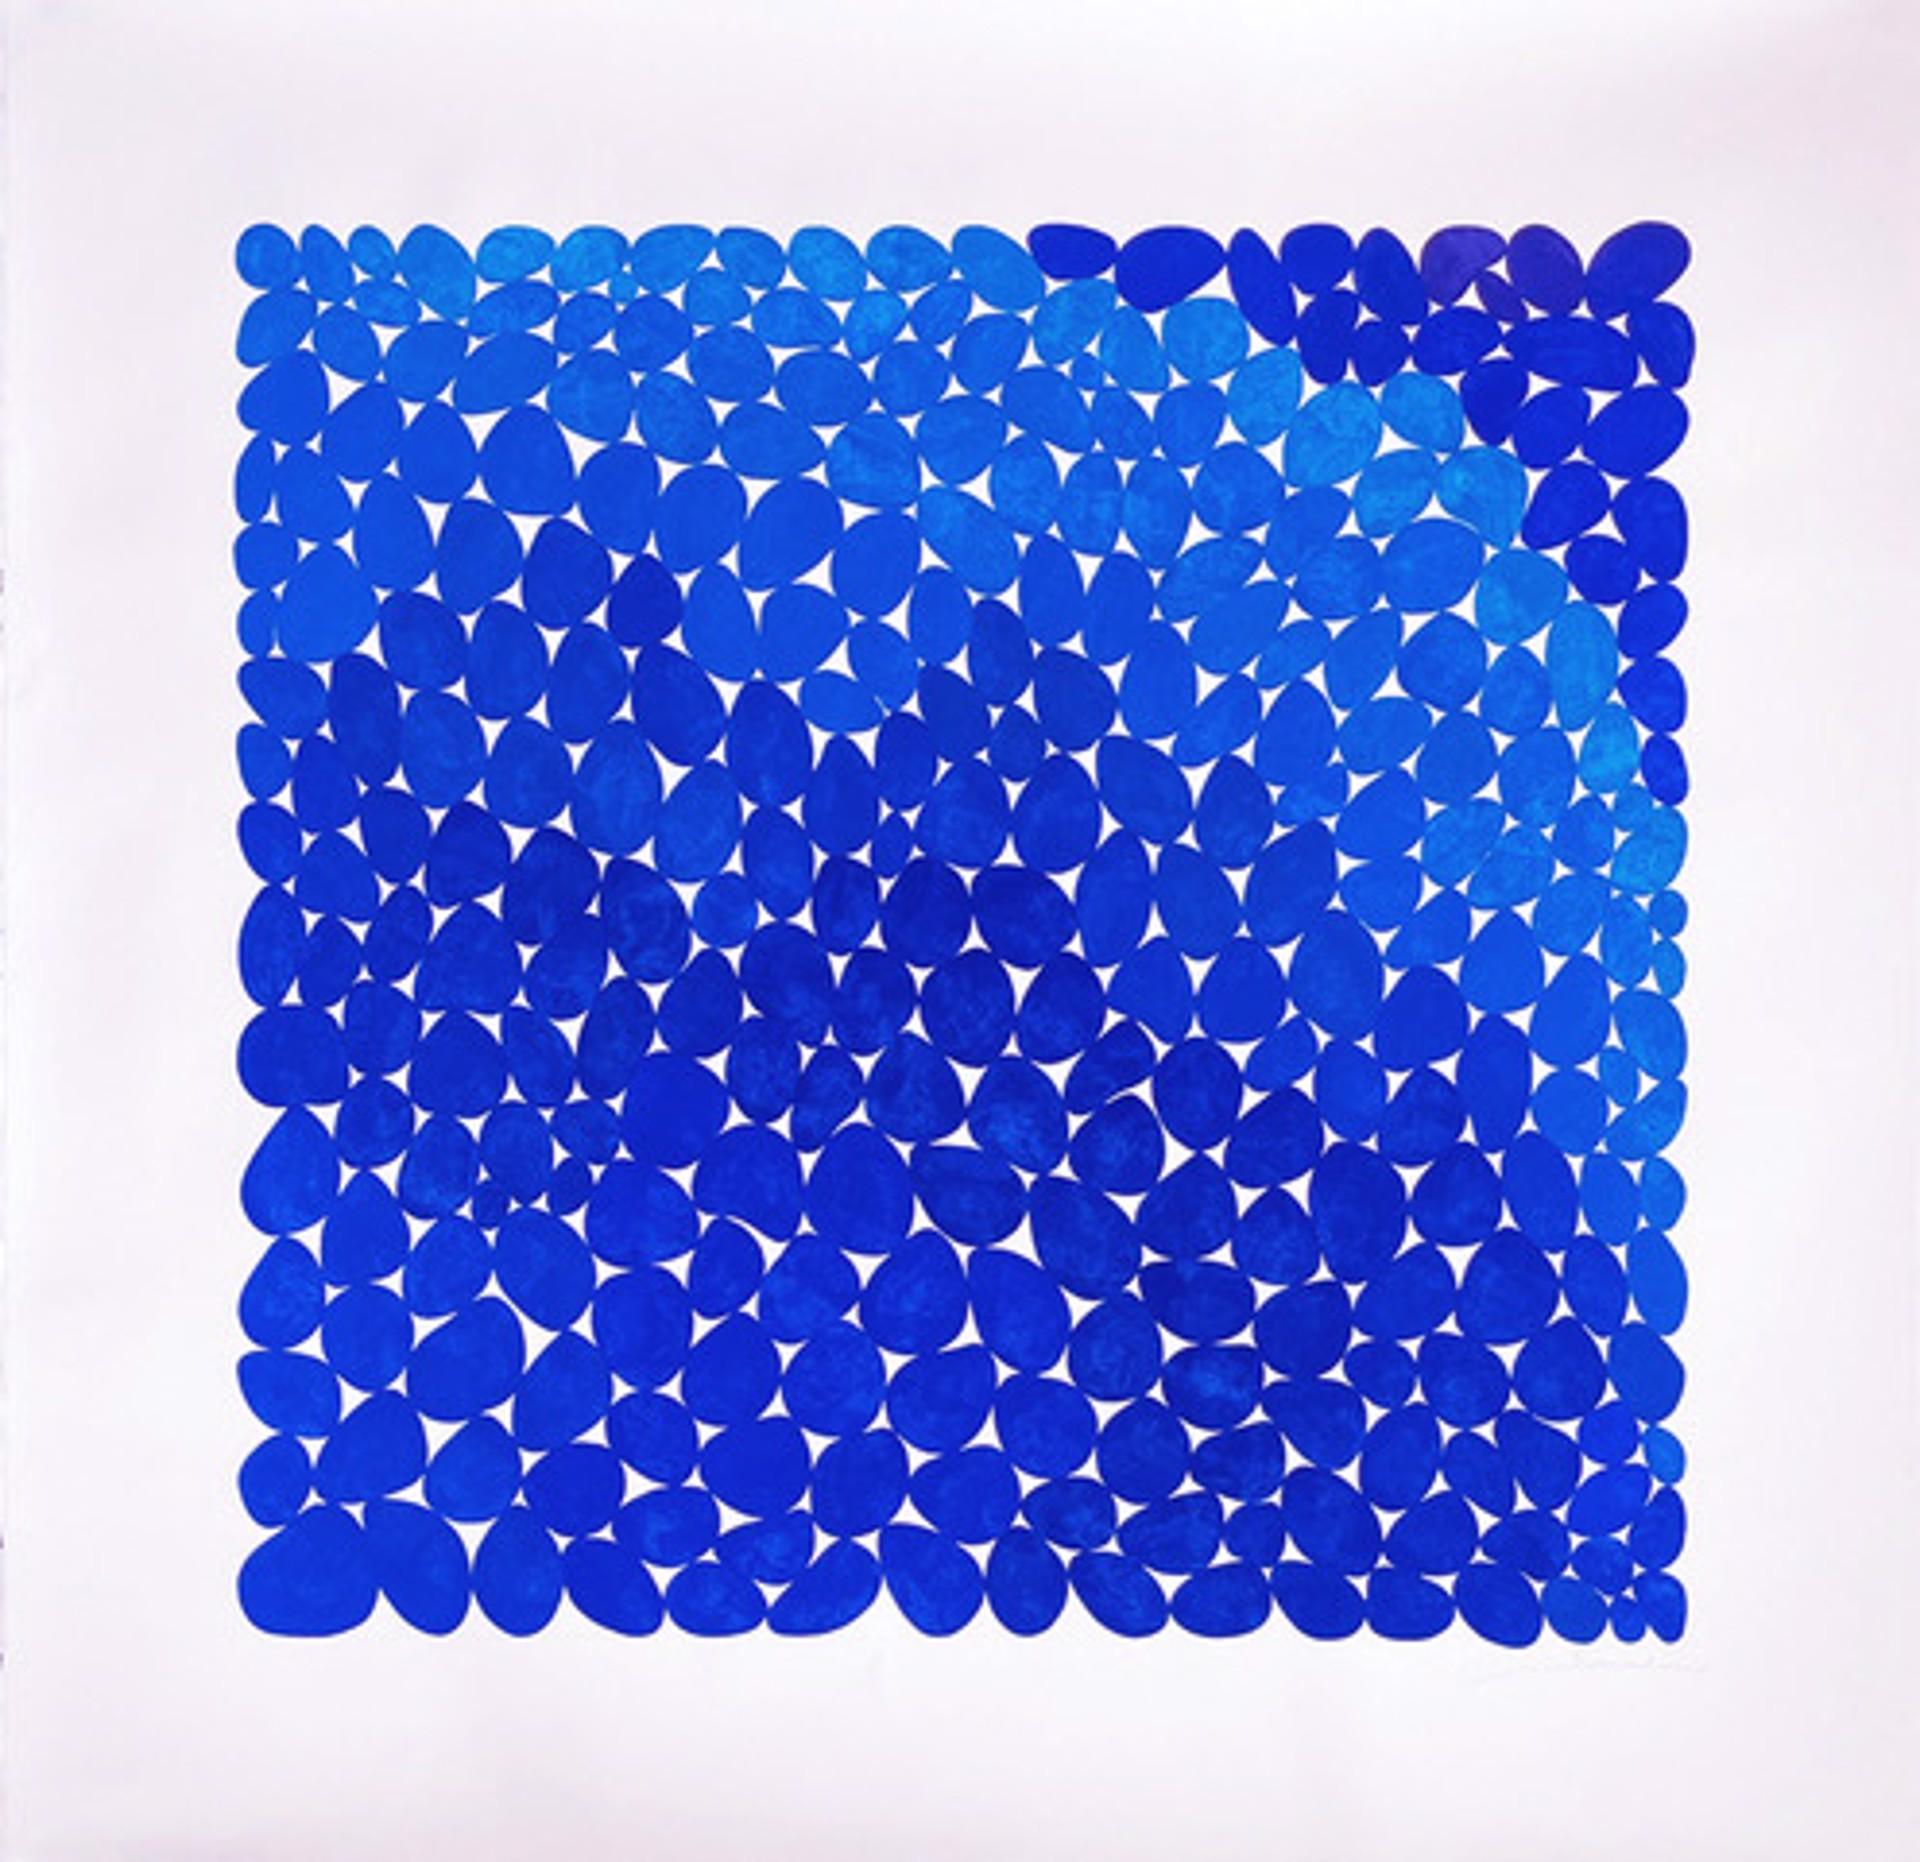 Ultramarine Crush - Art by Nancy Simonds